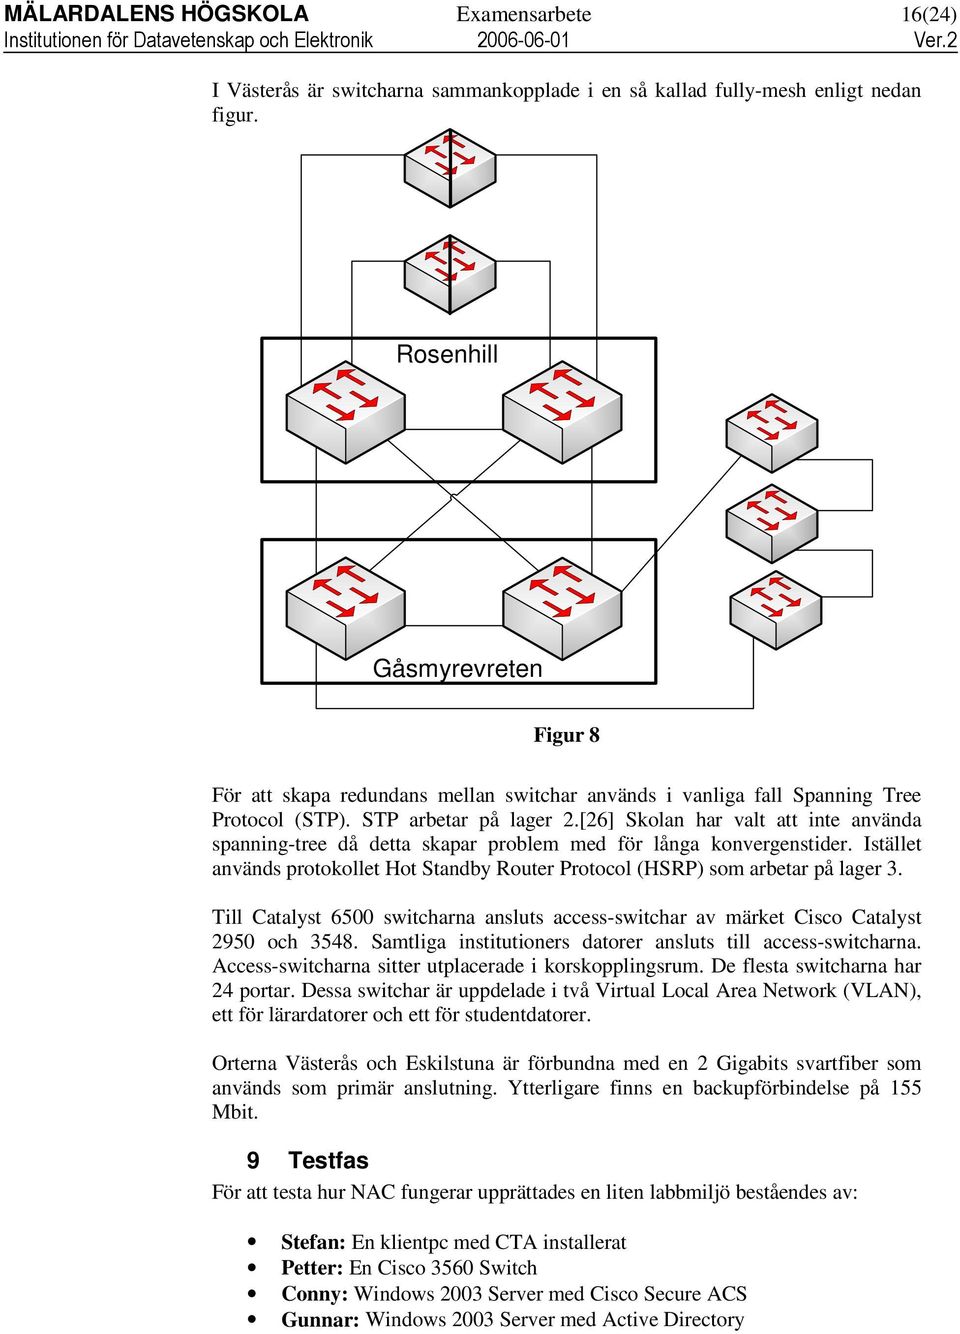 [26] Skolan har valt att inte använda spanning-tree då detta skapar problem med för långa konvergenstider. Istället används protokollet Hot Standby Router Protocol (HSRP) som arbetar på lager 3.